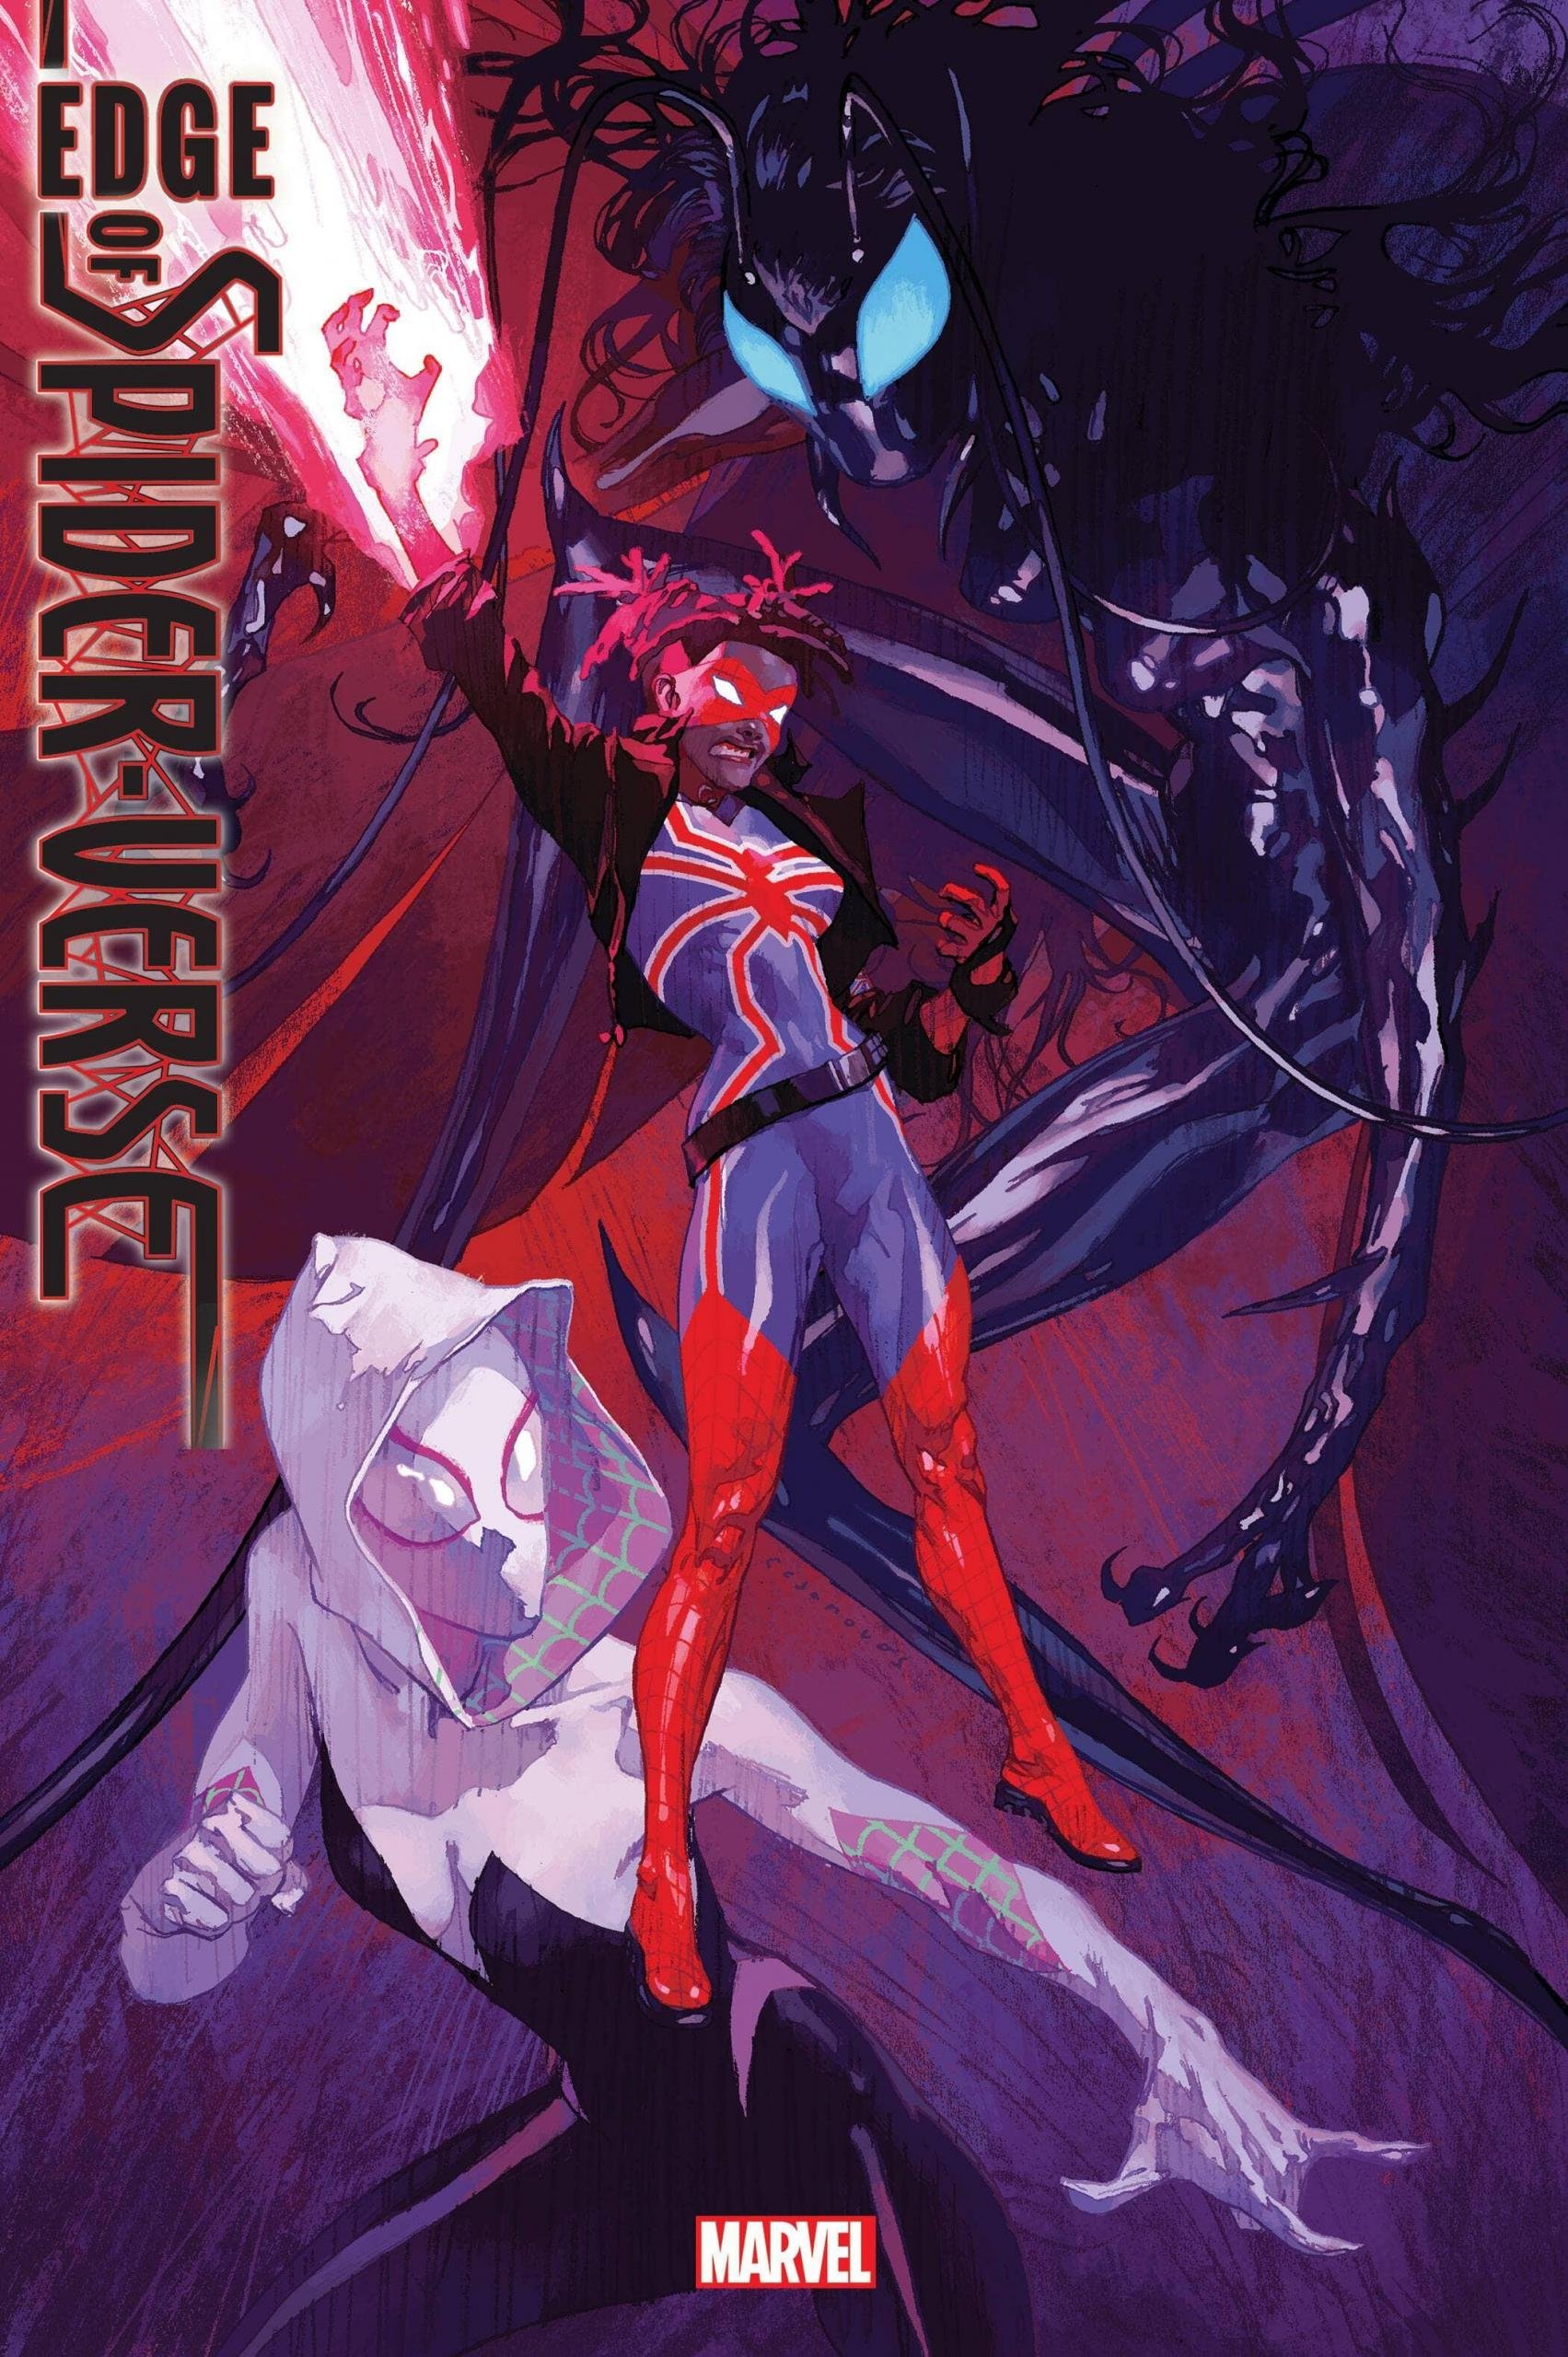 Cover di Edge of Spider-Verse 2 di Josemaria Casanovas